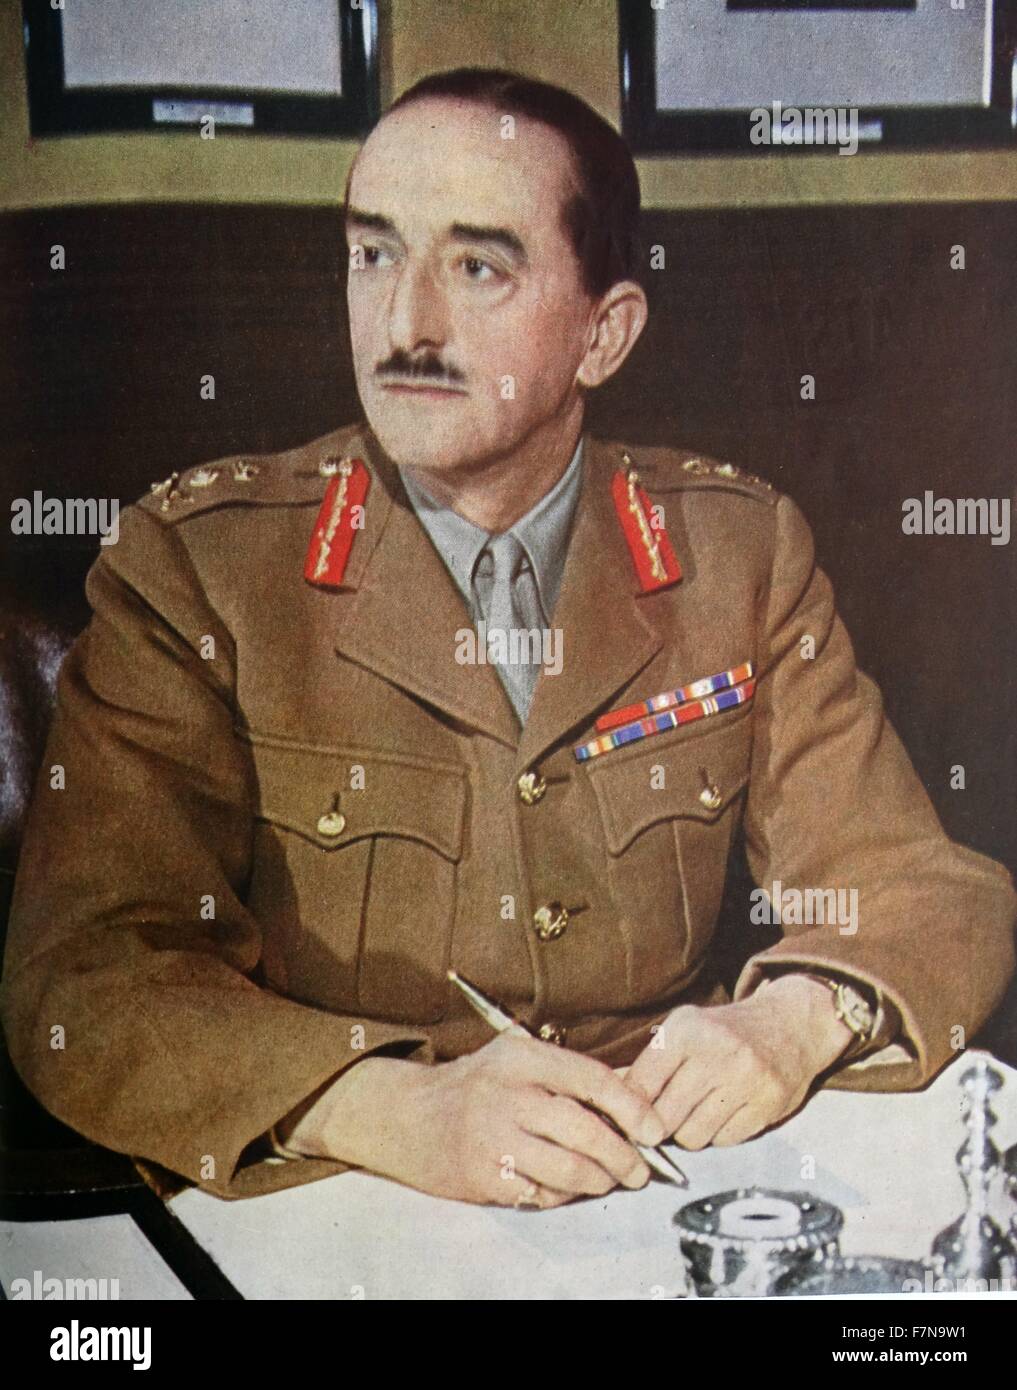 Foto von General Field Marshall Sir Alan Brooke (1883 – 1963), ein hoher Kommandeur im zweiten Weltkrieg in der britischen Armee und Chef des imperialen Generalstabs Farbe. Datierte 1939 Stockfoto